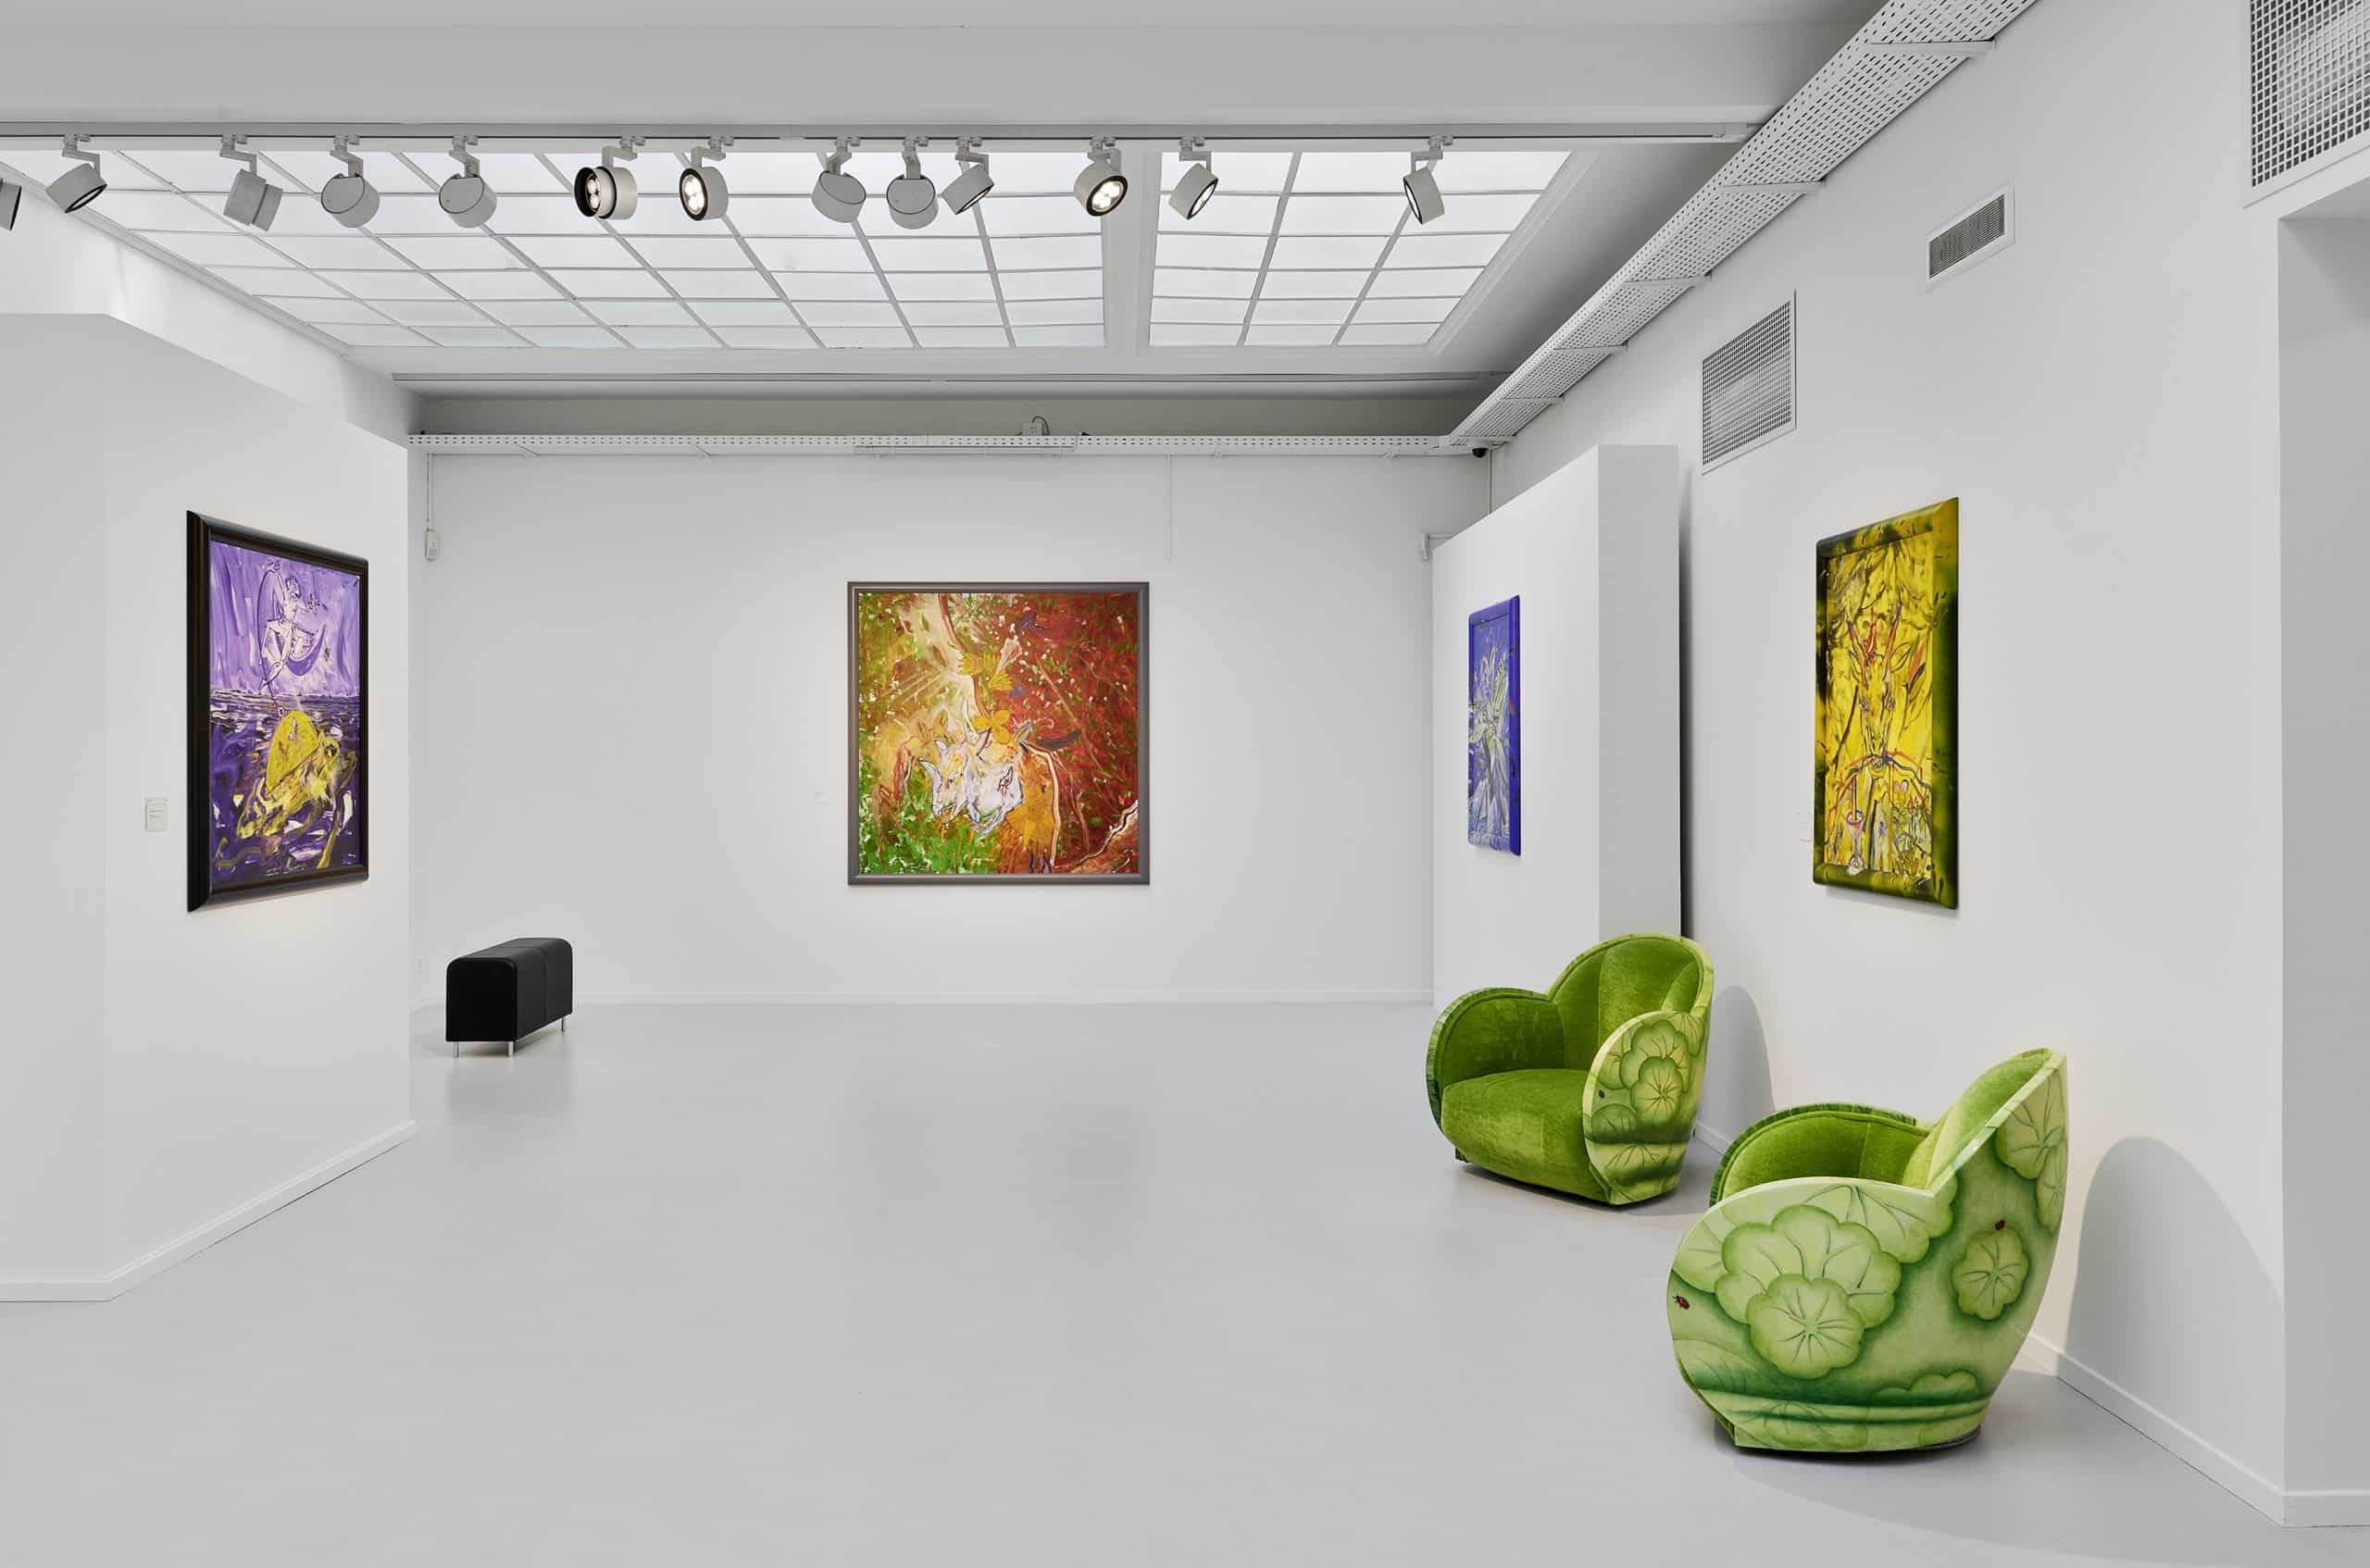 Galerie Gmurzynska_Attersee_Installation_Zeus ankert_Junge Sonne_Grünstück_Farbenfresser